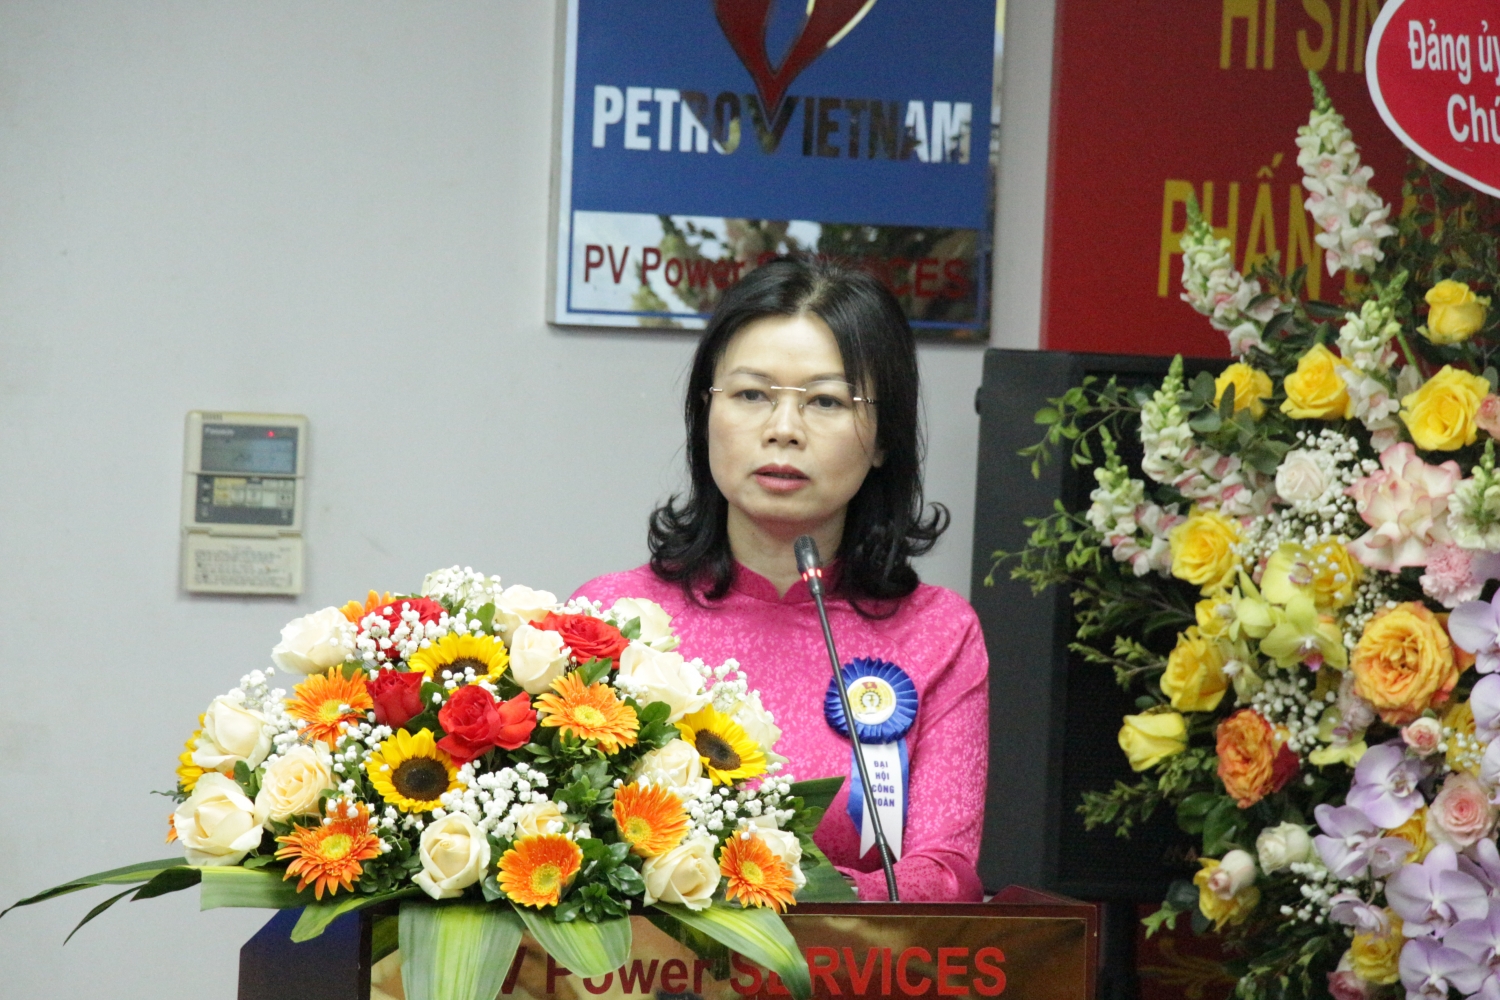 Đồng chí Ngô Hồng Vân – Phó Bí thư thường trực Đảng ủy, Chủ tịch Công đoàn PV Power phát biểu chỉ đạo tại Đại hội